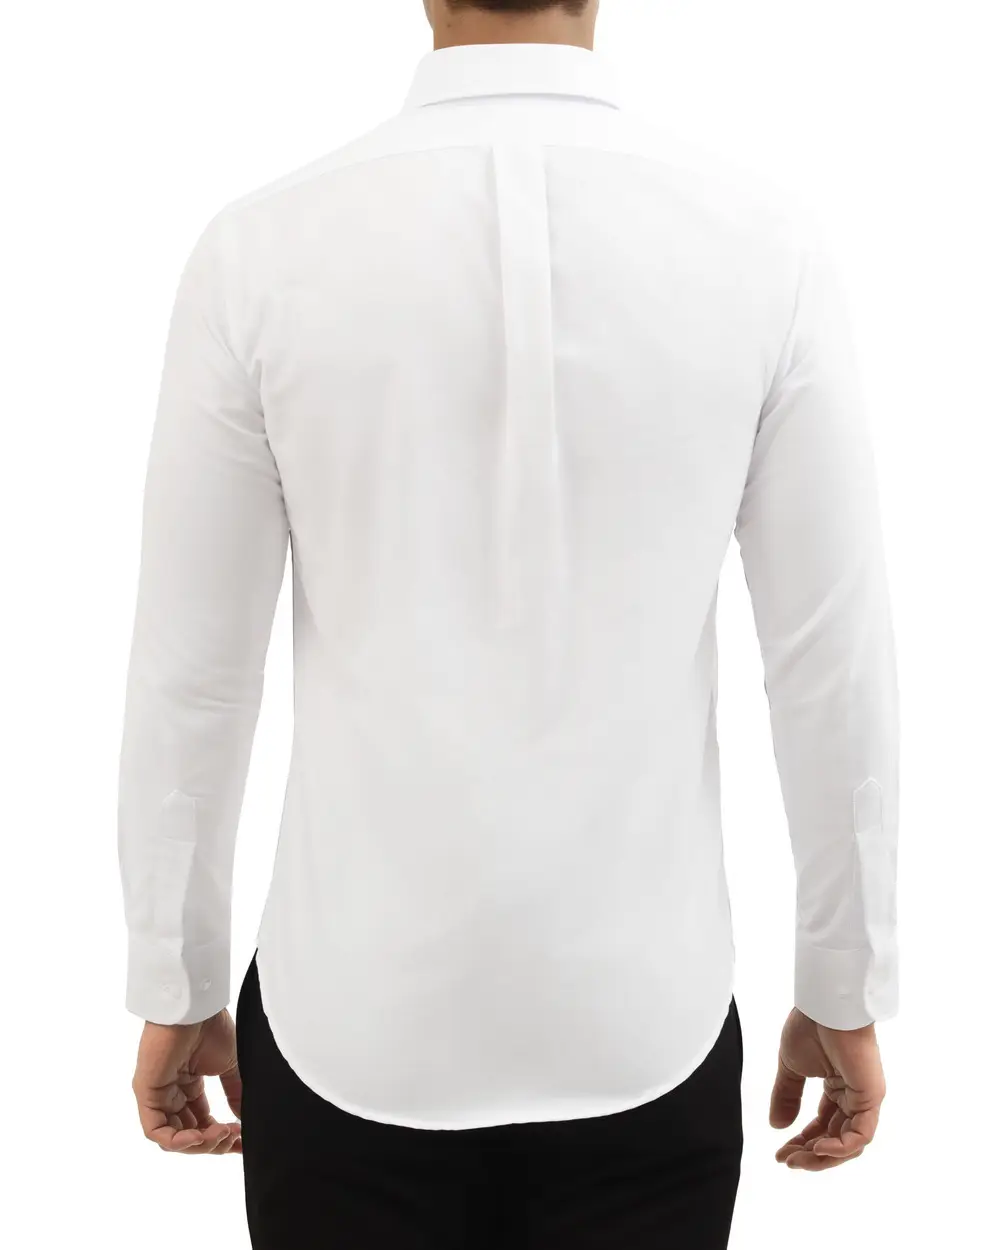 Camisa casual oxford manga larga blanca slim fit